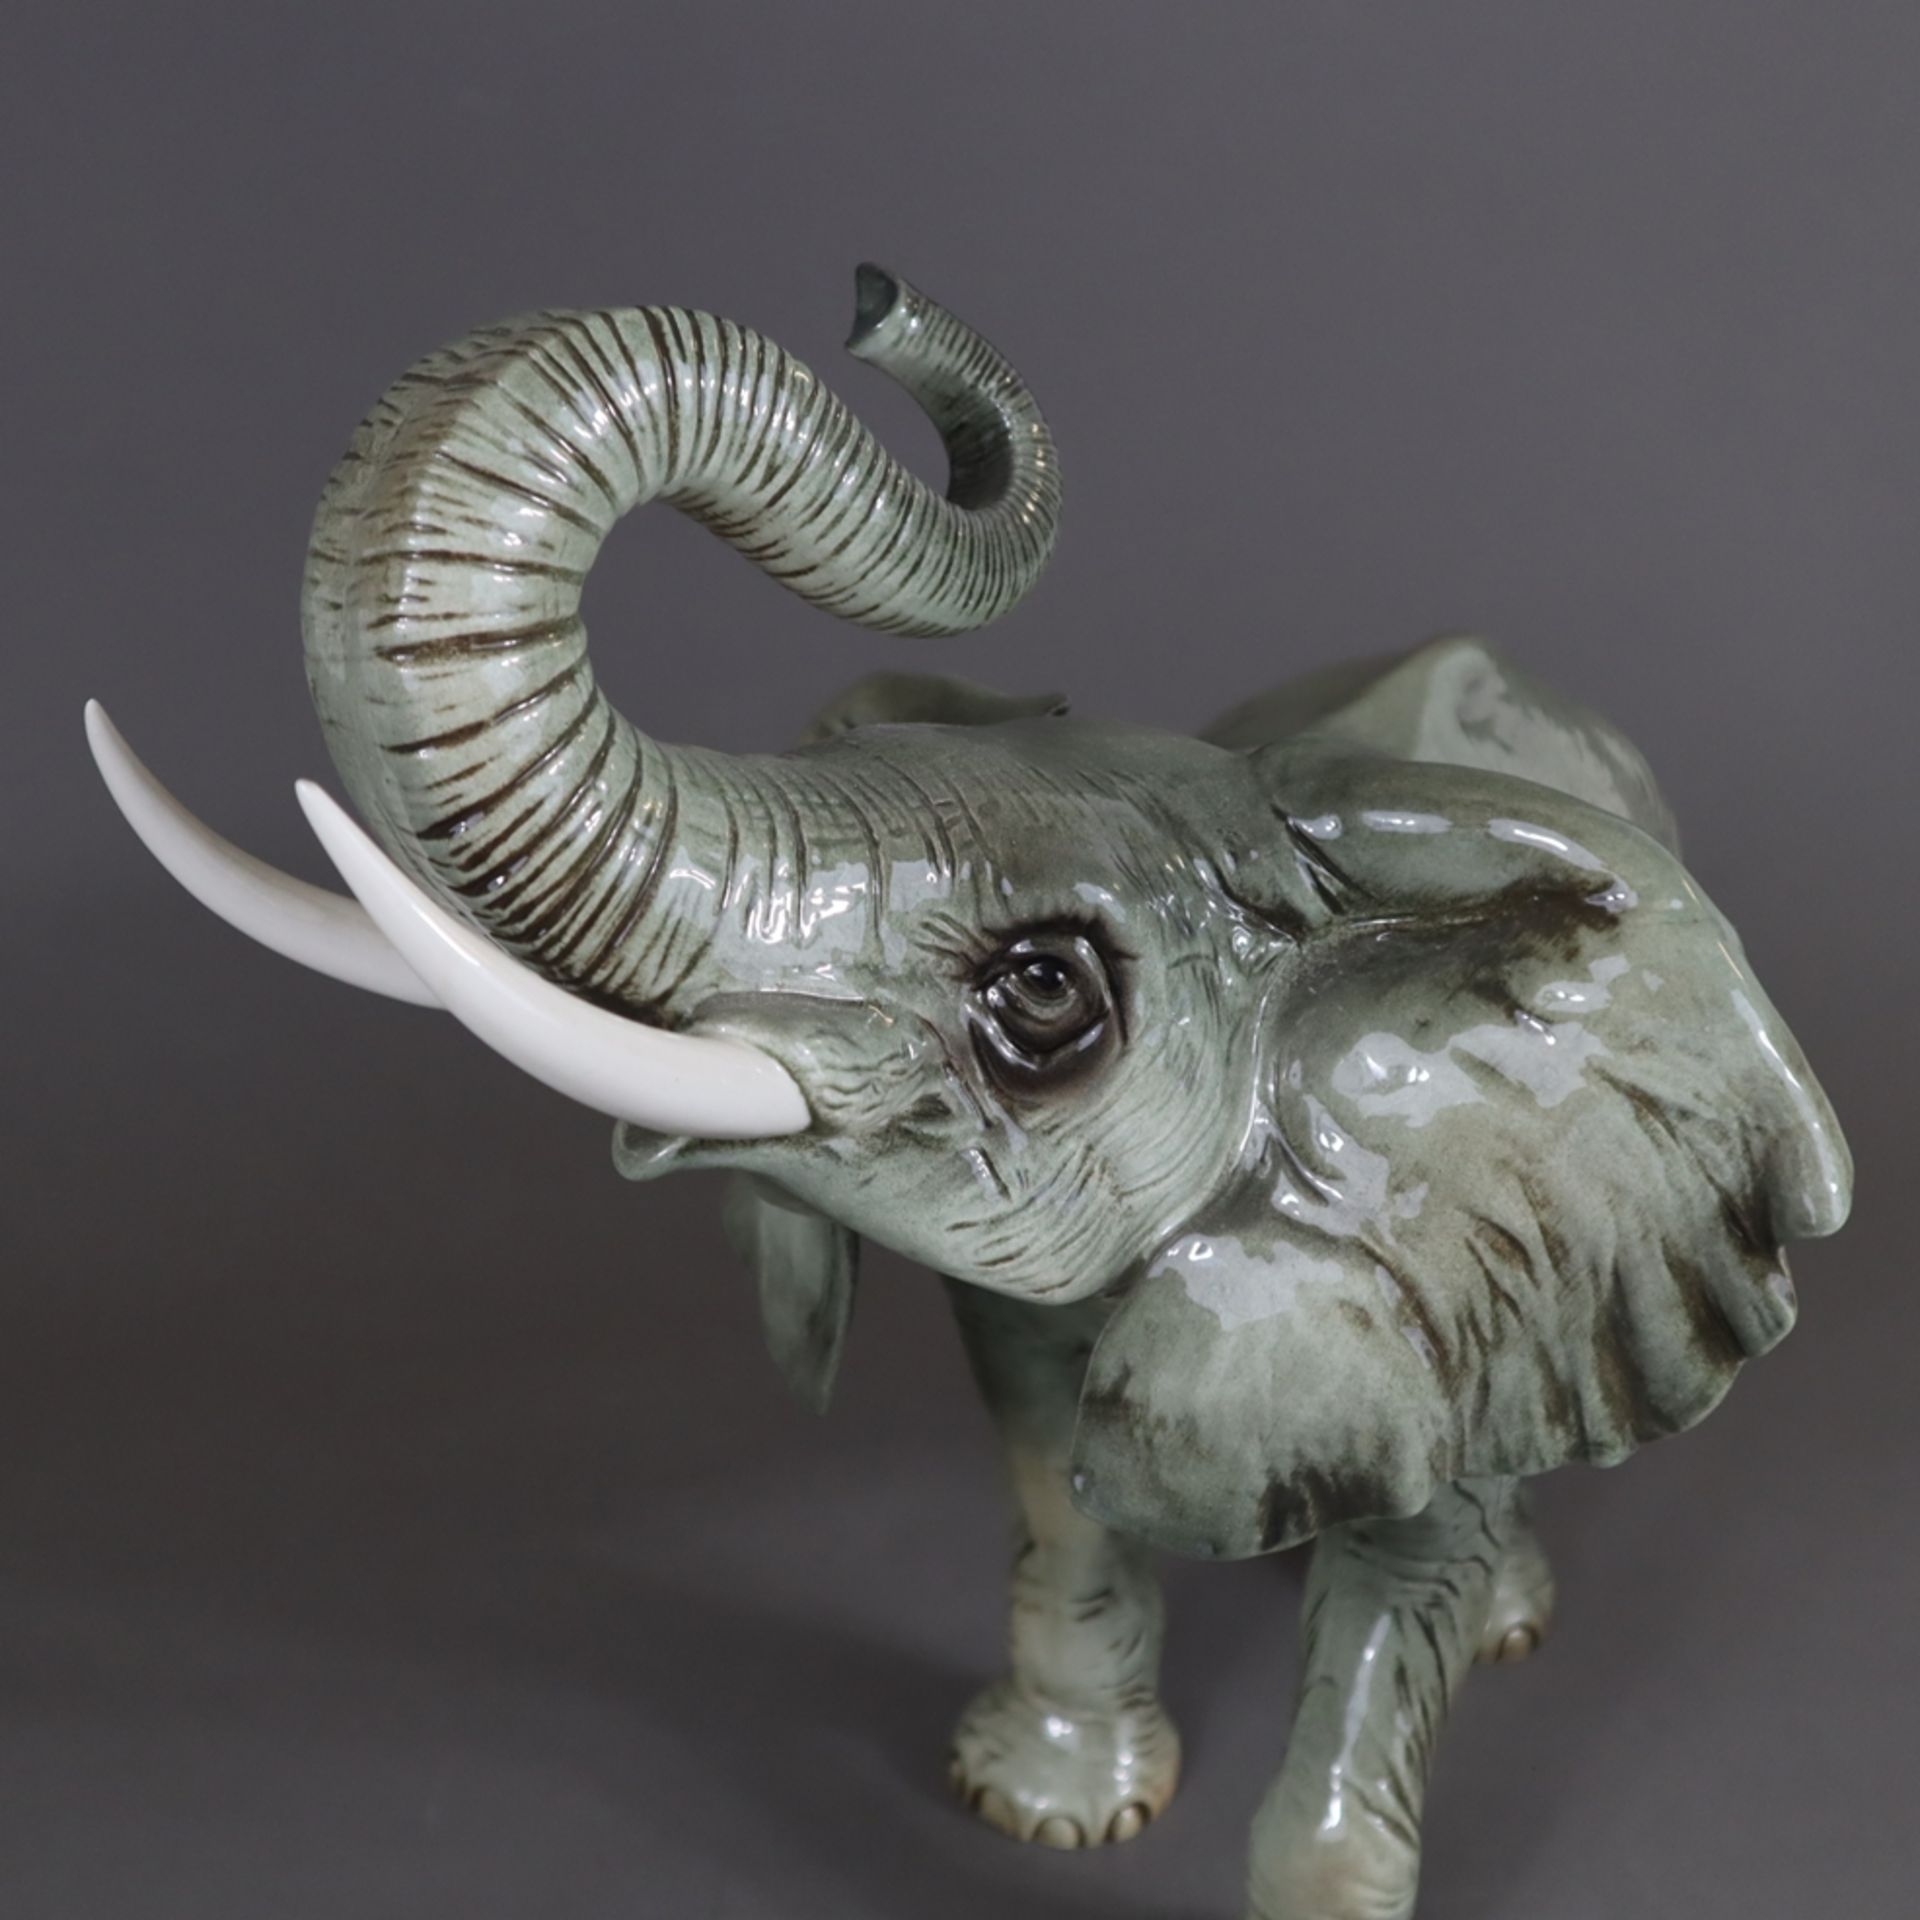 Große Tierfigur "Afrikanischer Elefant" - Goebel, aus der Figurenserie "Serengeti", Porzellan, natu - Bild 4 aus 8